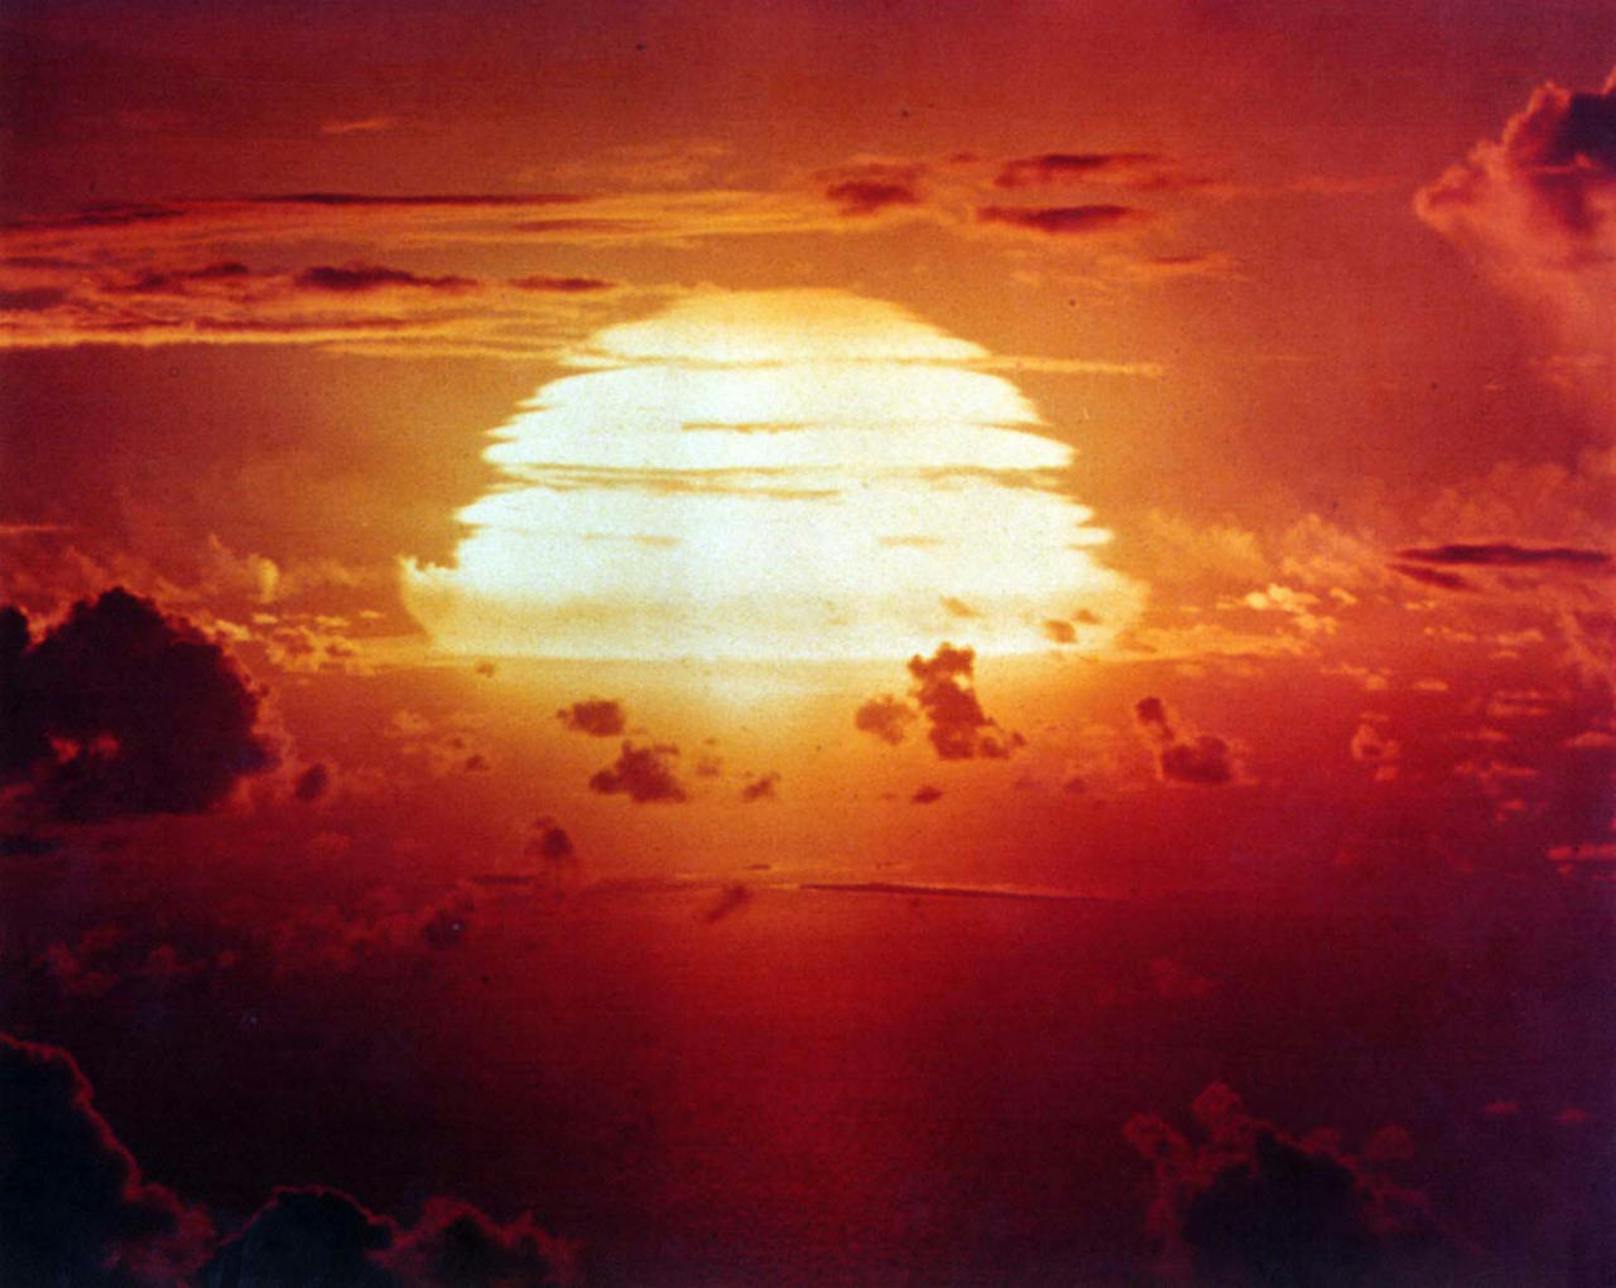 Nach dem 2. Weltkrieg lieferten sich die Supermächte ein Rennen um die zerstörerischte Bombe. Im Bild, ein US-Atomwaffentest auf dem Bikini-Atoll am 8. Juli 1956.